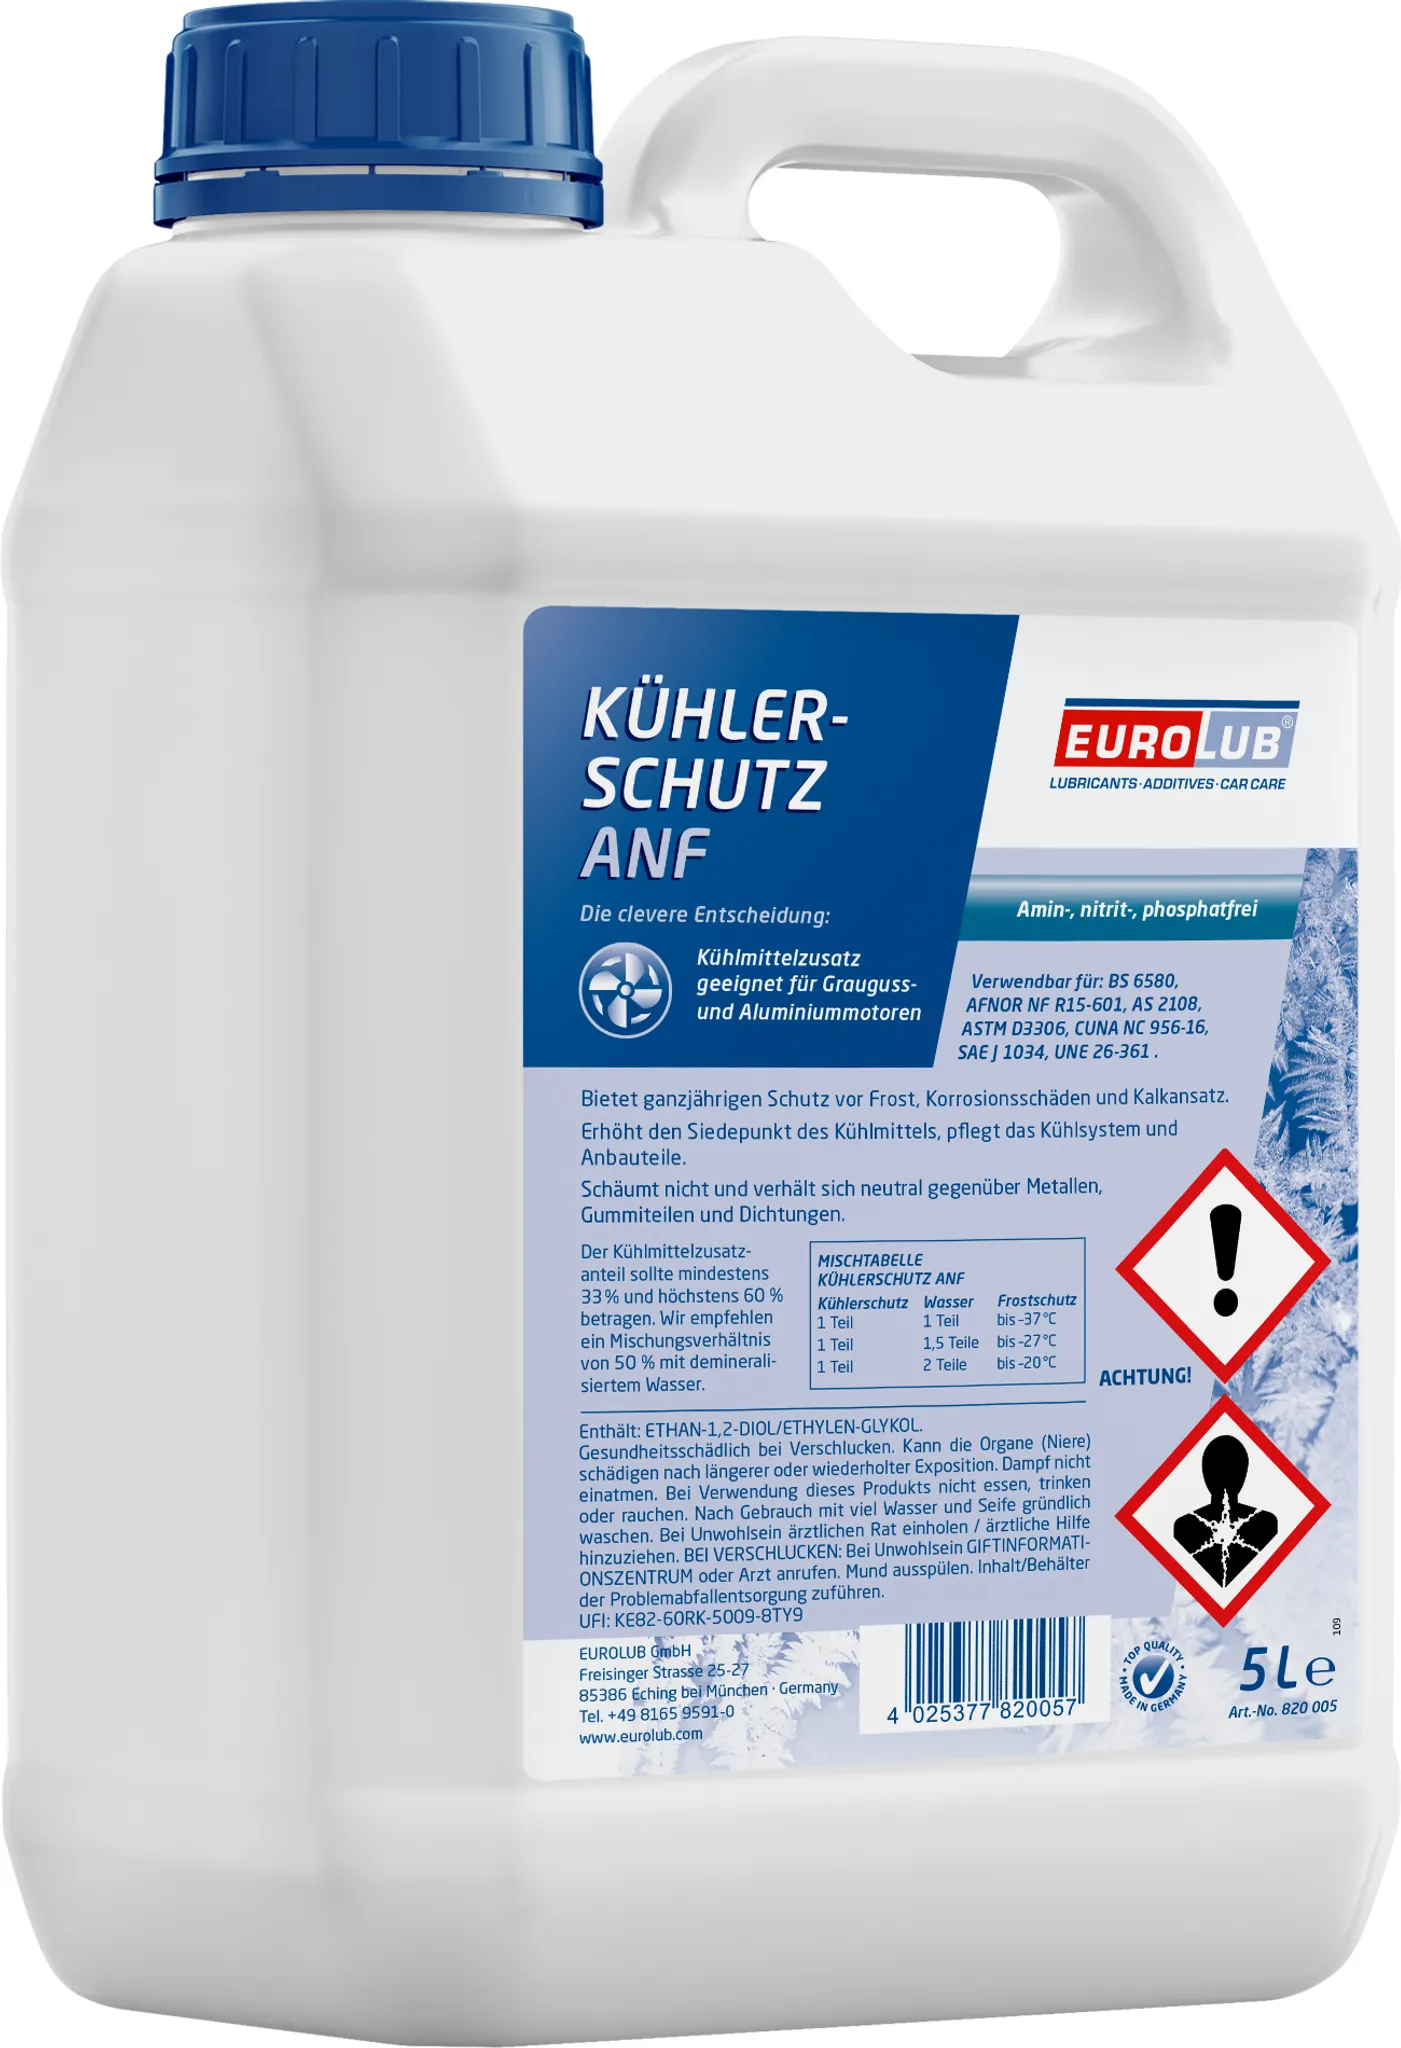 BMW Kühlerfrostschutz Konzentrat 1,5 Liter ab 12,99 € (Februar